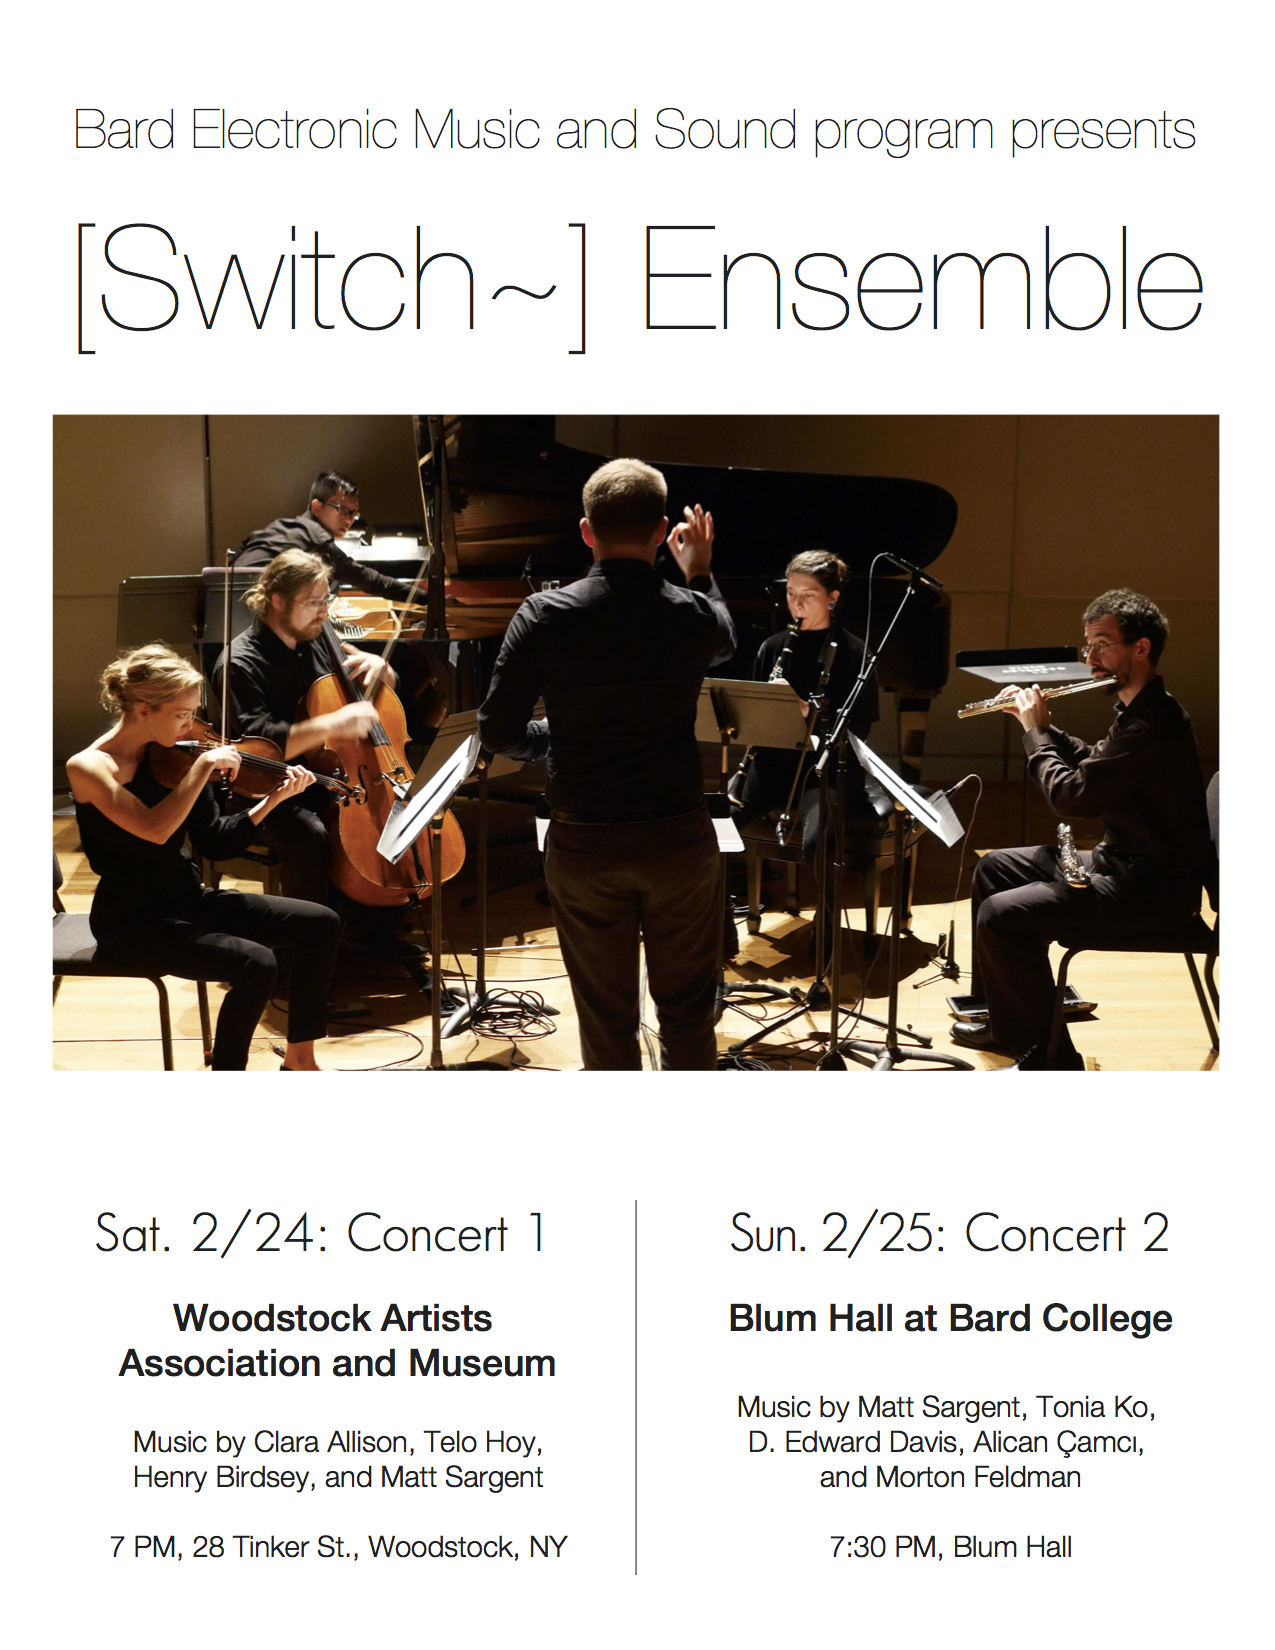 Switch Ensemble, Electronic Music